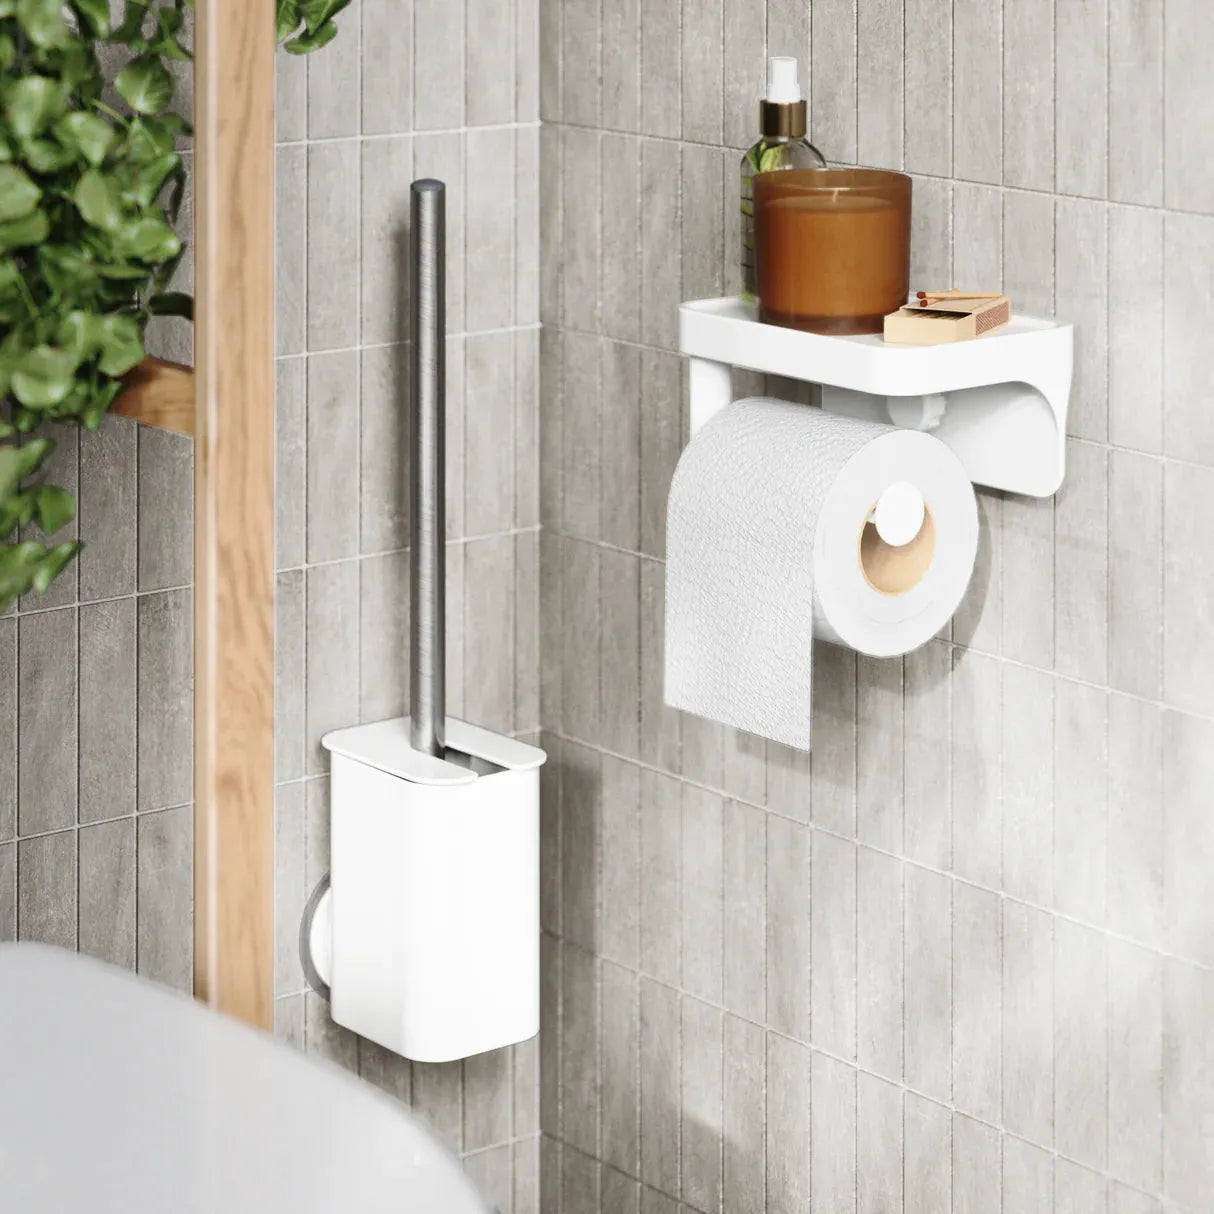 white minimal modern toilet paper holder and modern toilet brush holder mounted on wall